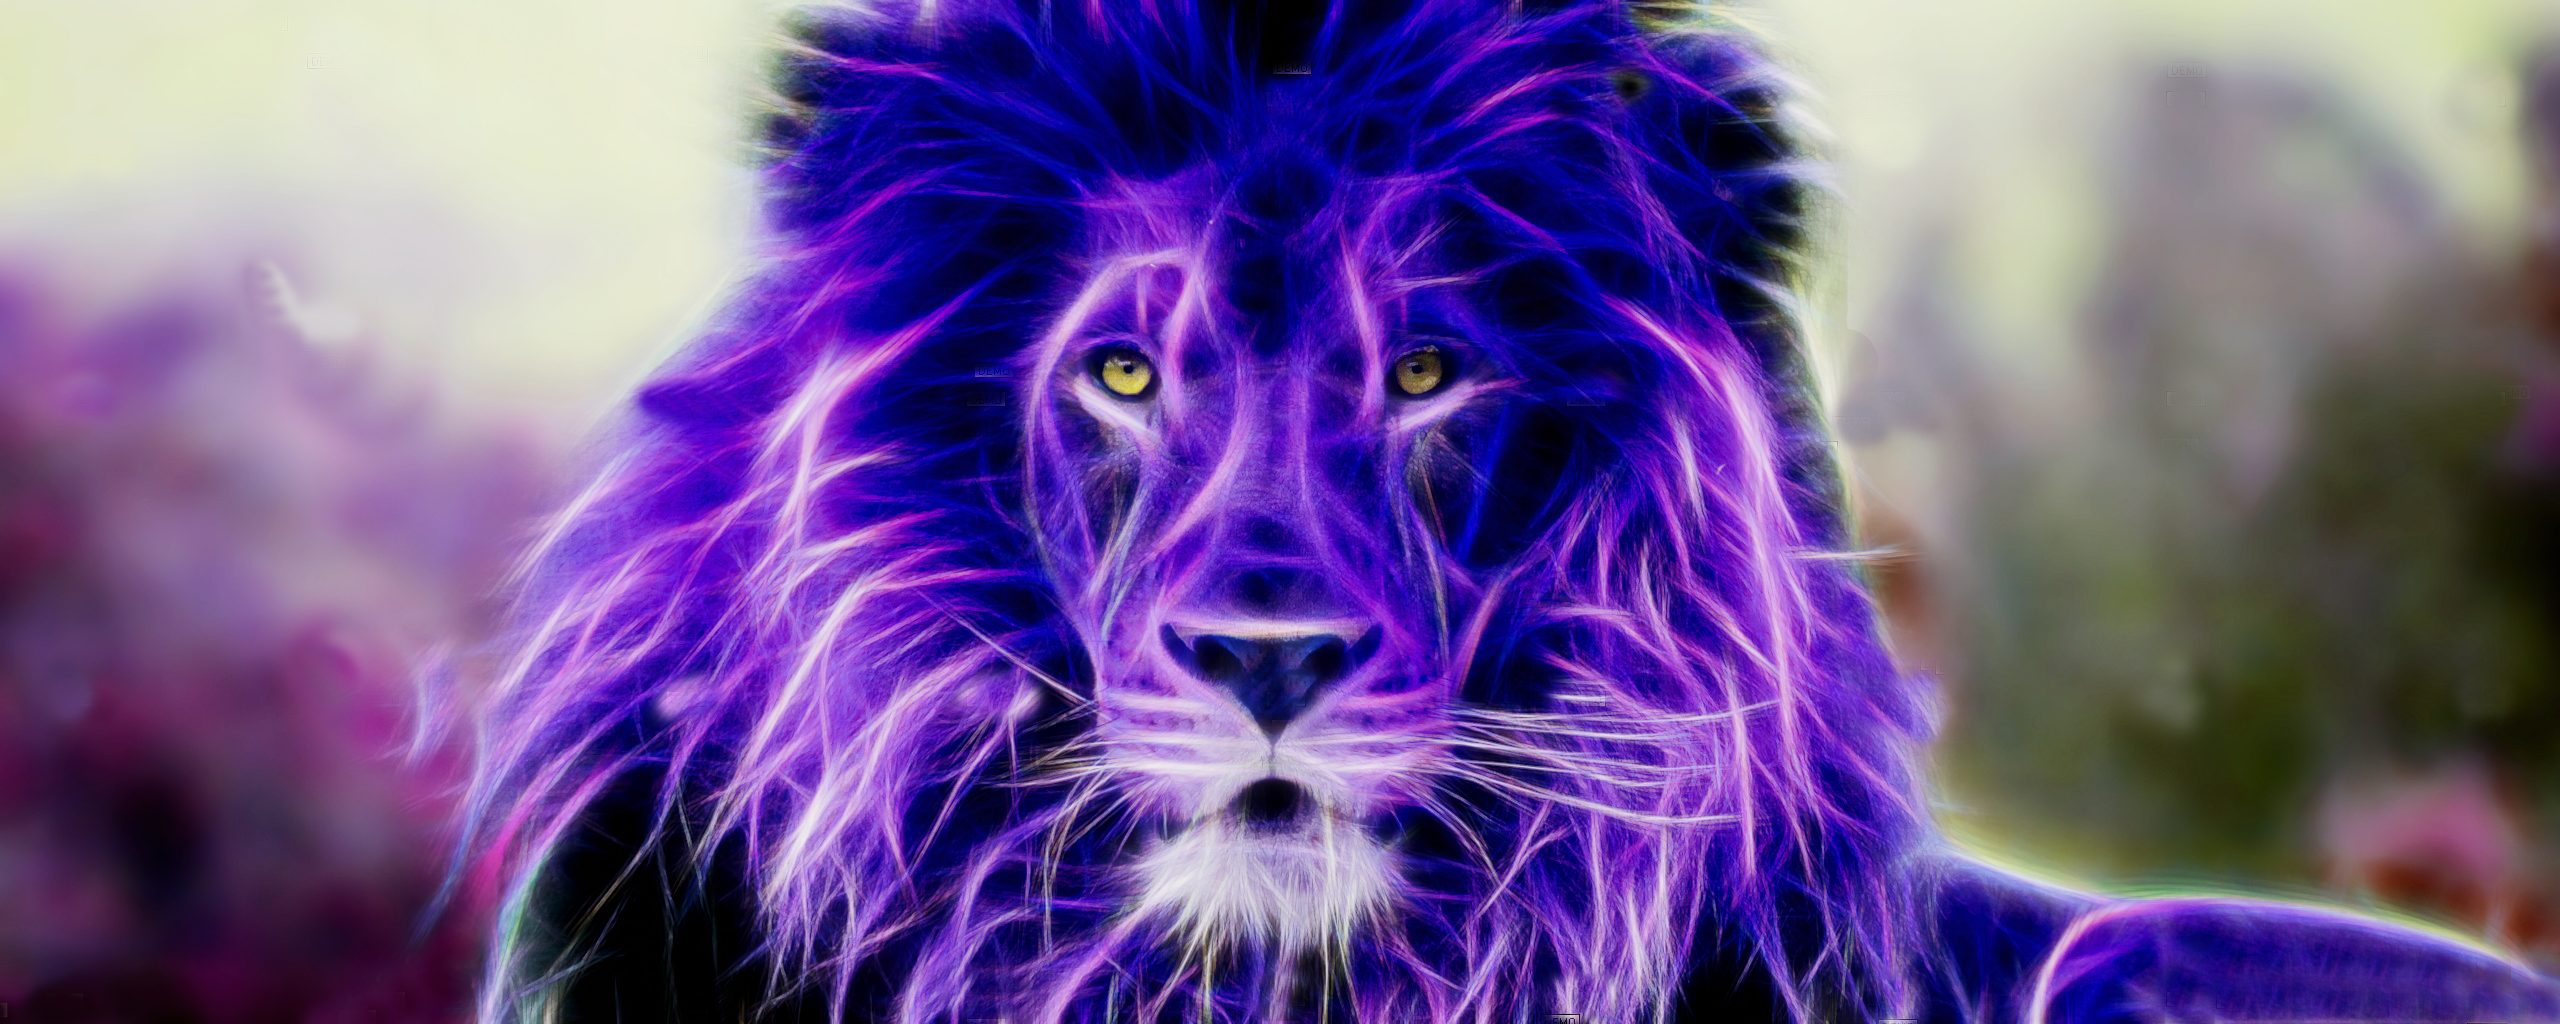 General 2560x1024 Fractalius animals mammals lion digital art big cats